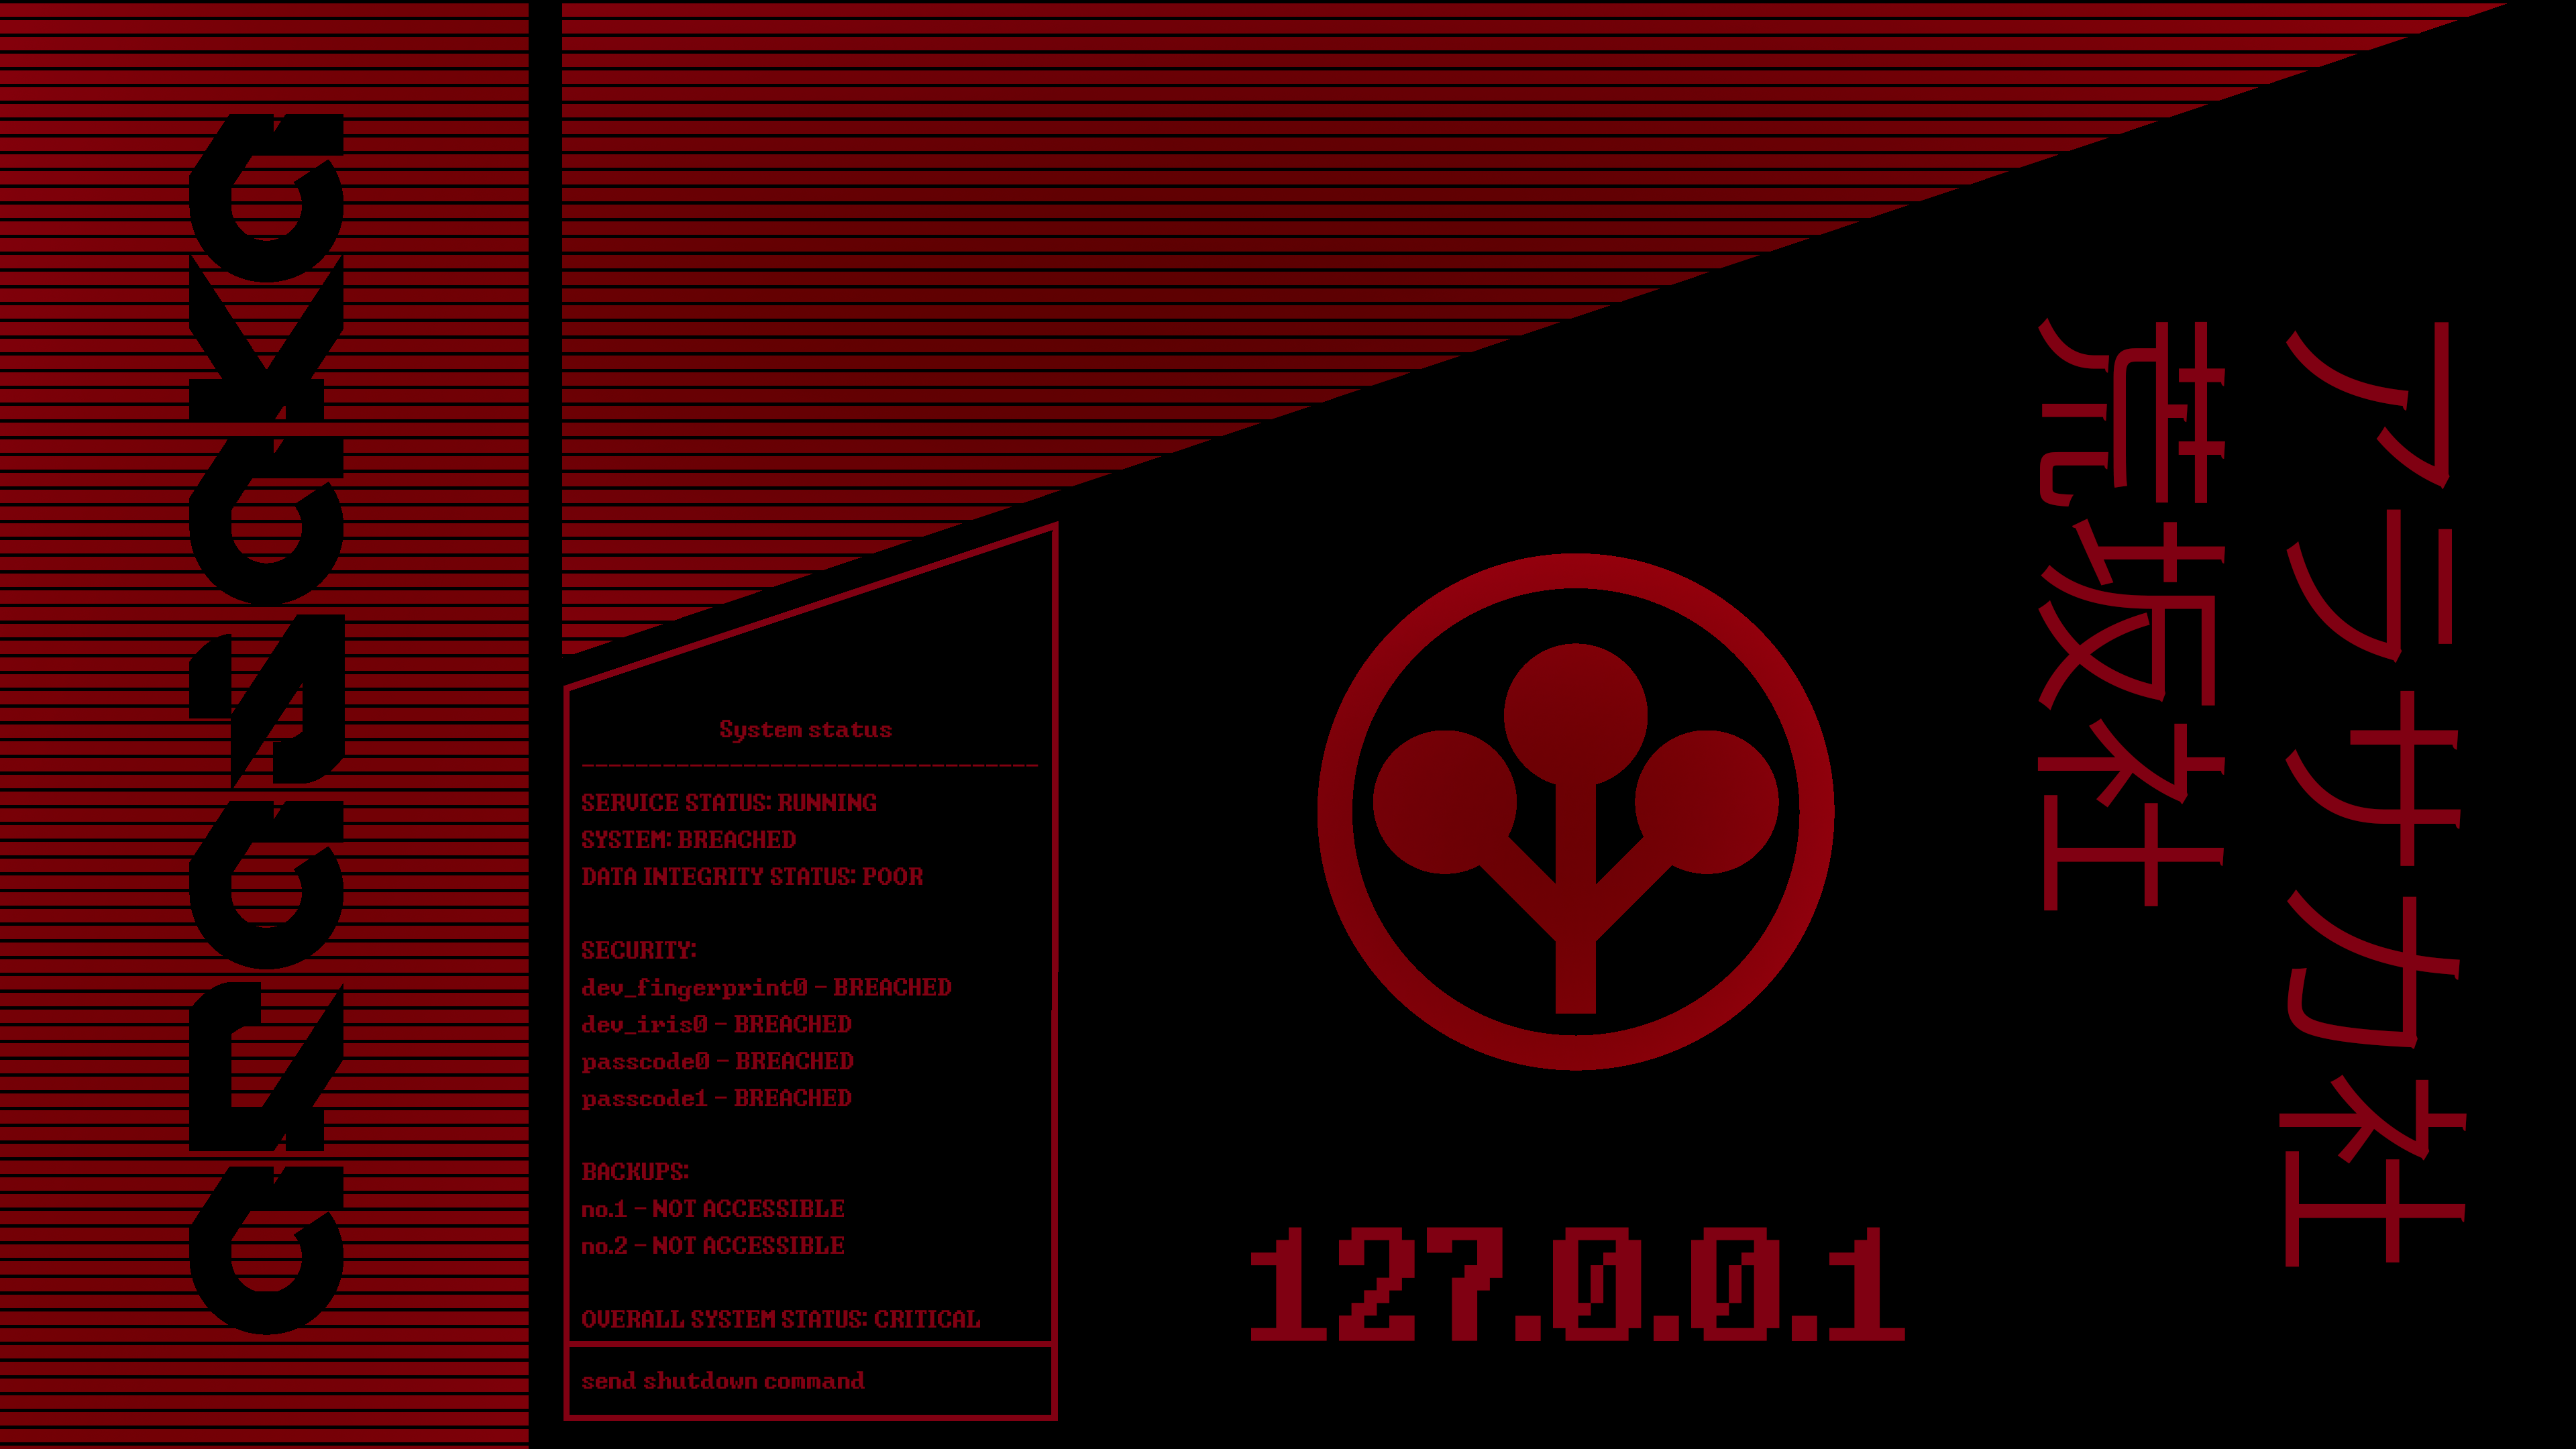 Cyberpunk Arasaka red wallpaper. Cyberpunk, Red wallpaper, Wallpaper